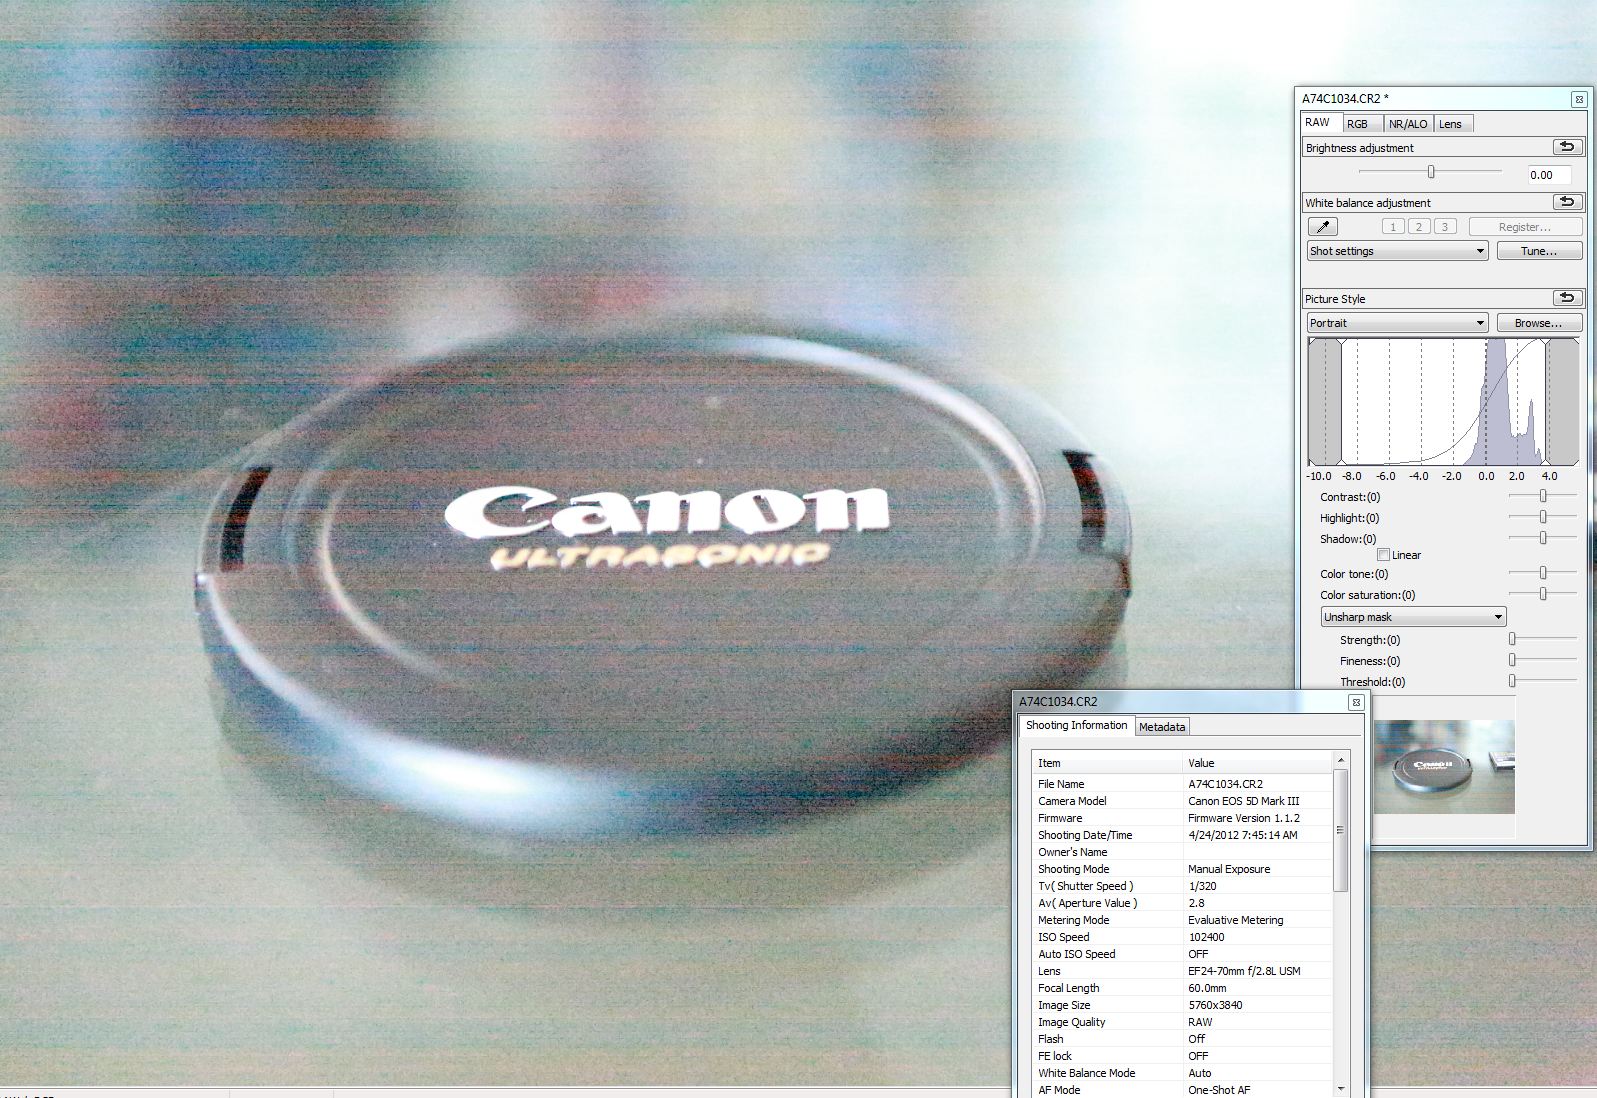  Canon EOS 5D Mark III- IŞIK SIZINTISI SORUNU